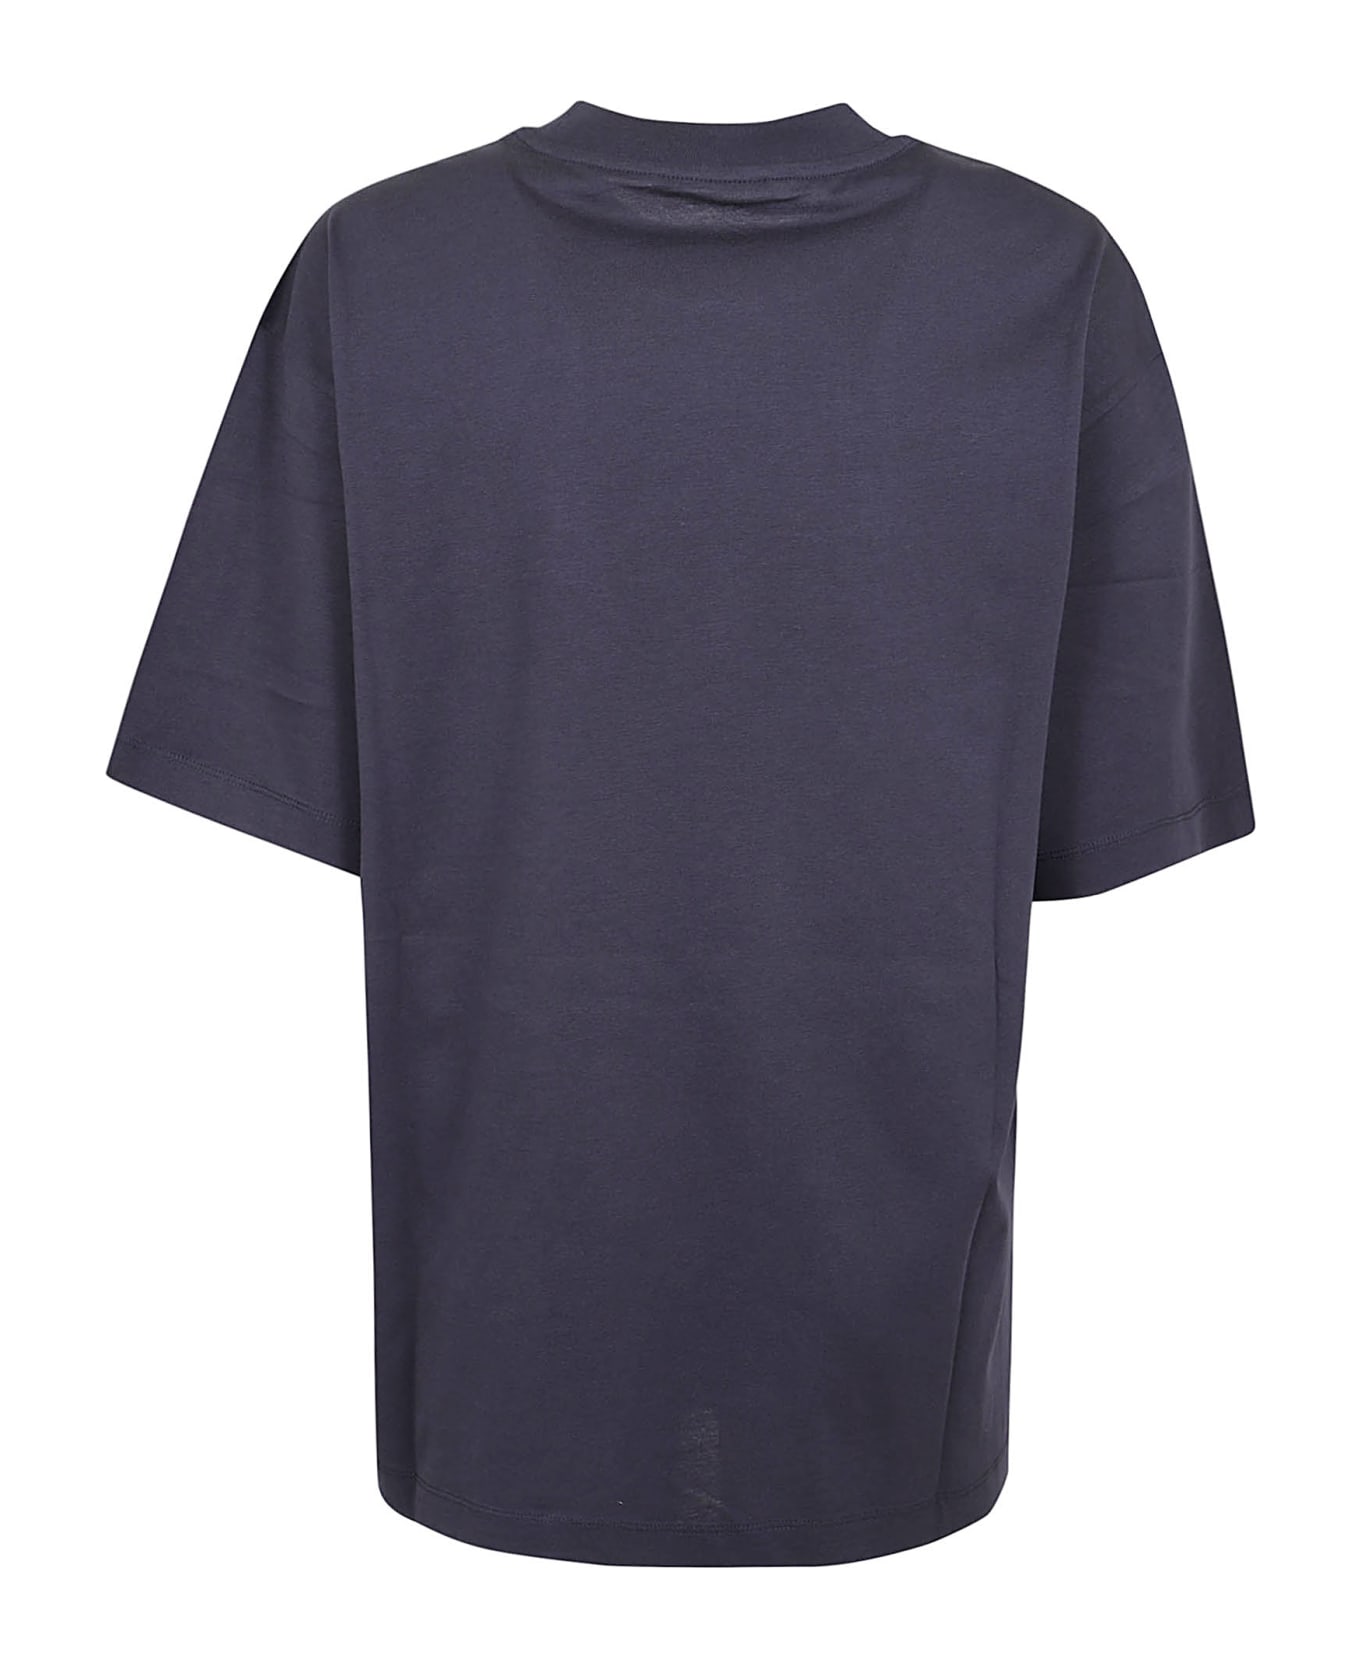 Marni T-shirt - Blublack